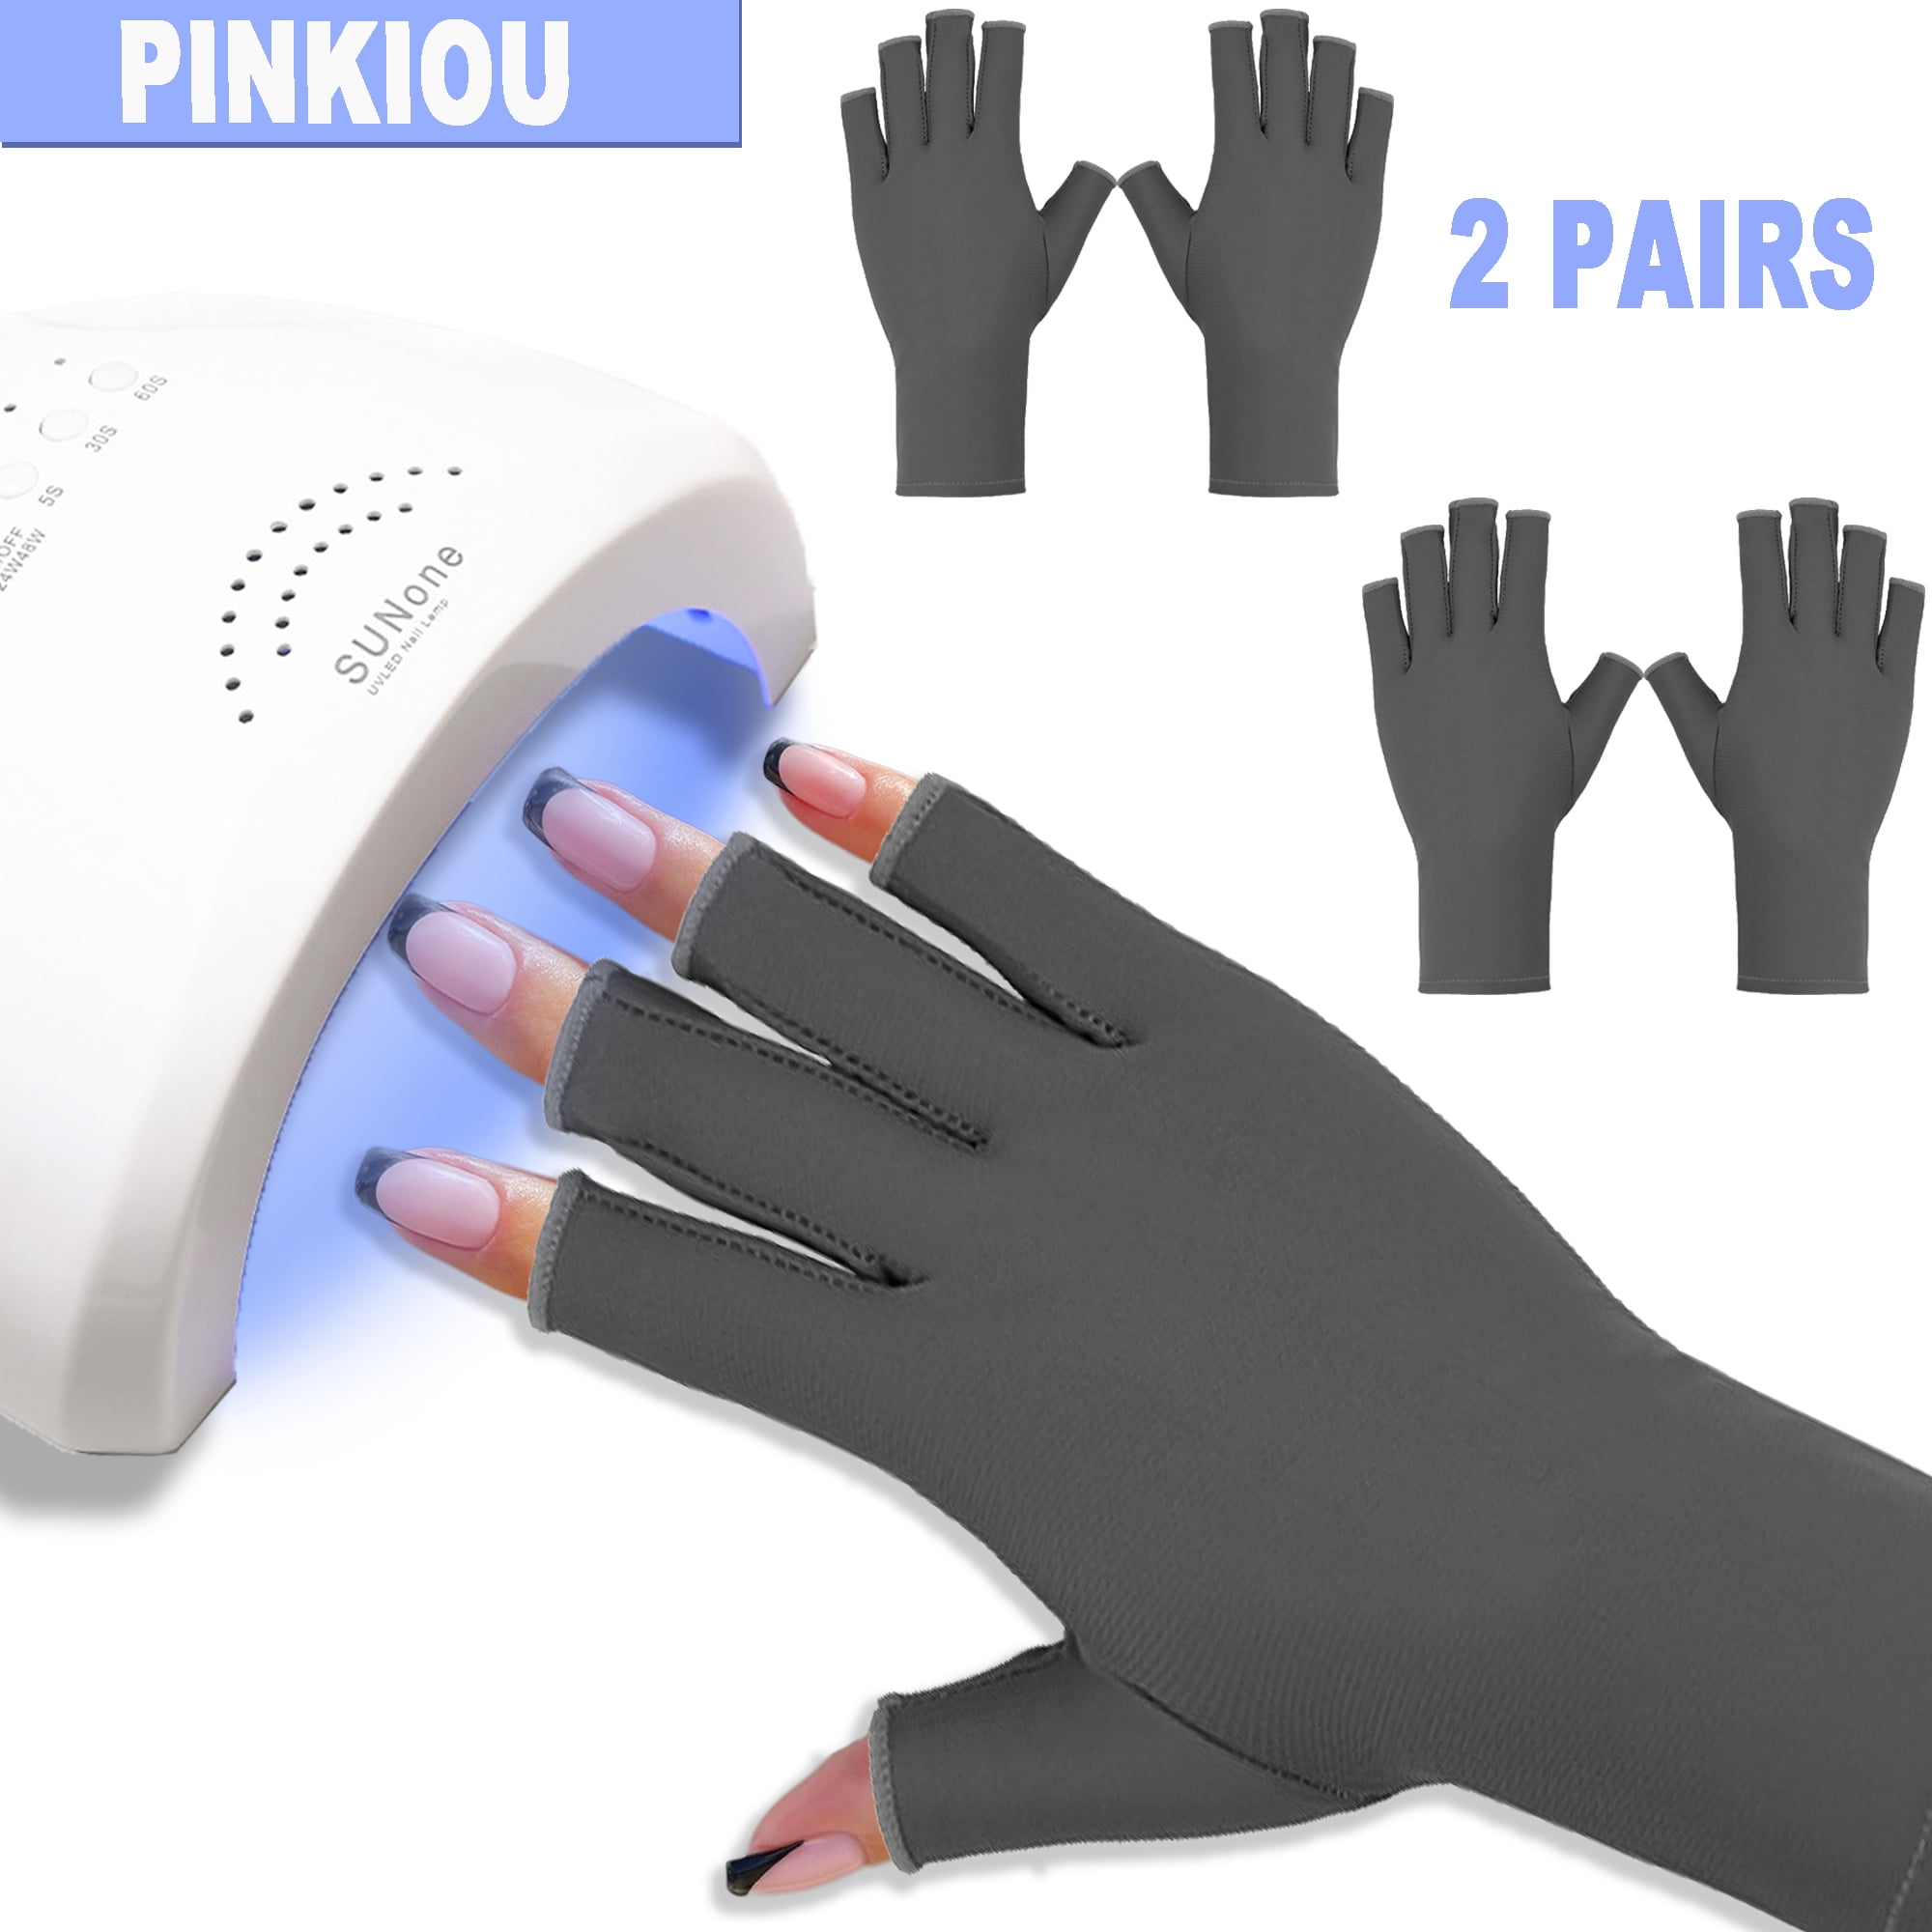 SAVILAND UV Gloves for Nails and Organizer Case for Portabling Nail Polish  Nail Art Supply Storage